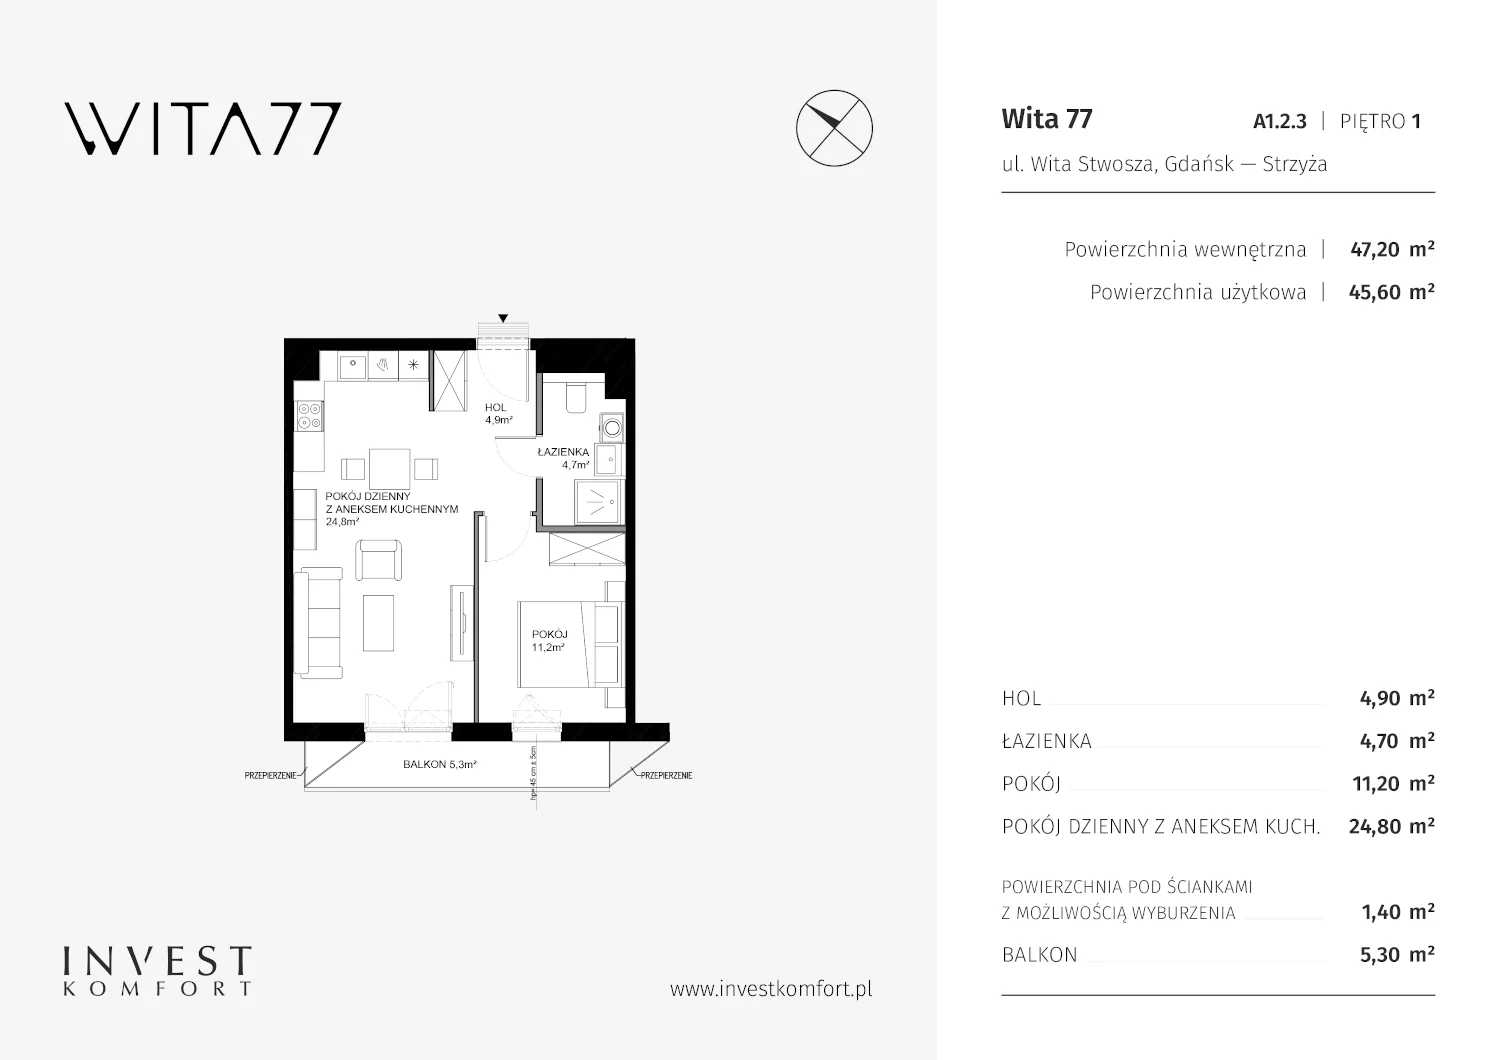 Mieszkanie 47,20 m², piętro 1, oferta nr A1.2.3, Wita 77, Gdańsk, Strzyża, ul. Wita Stwosza 77